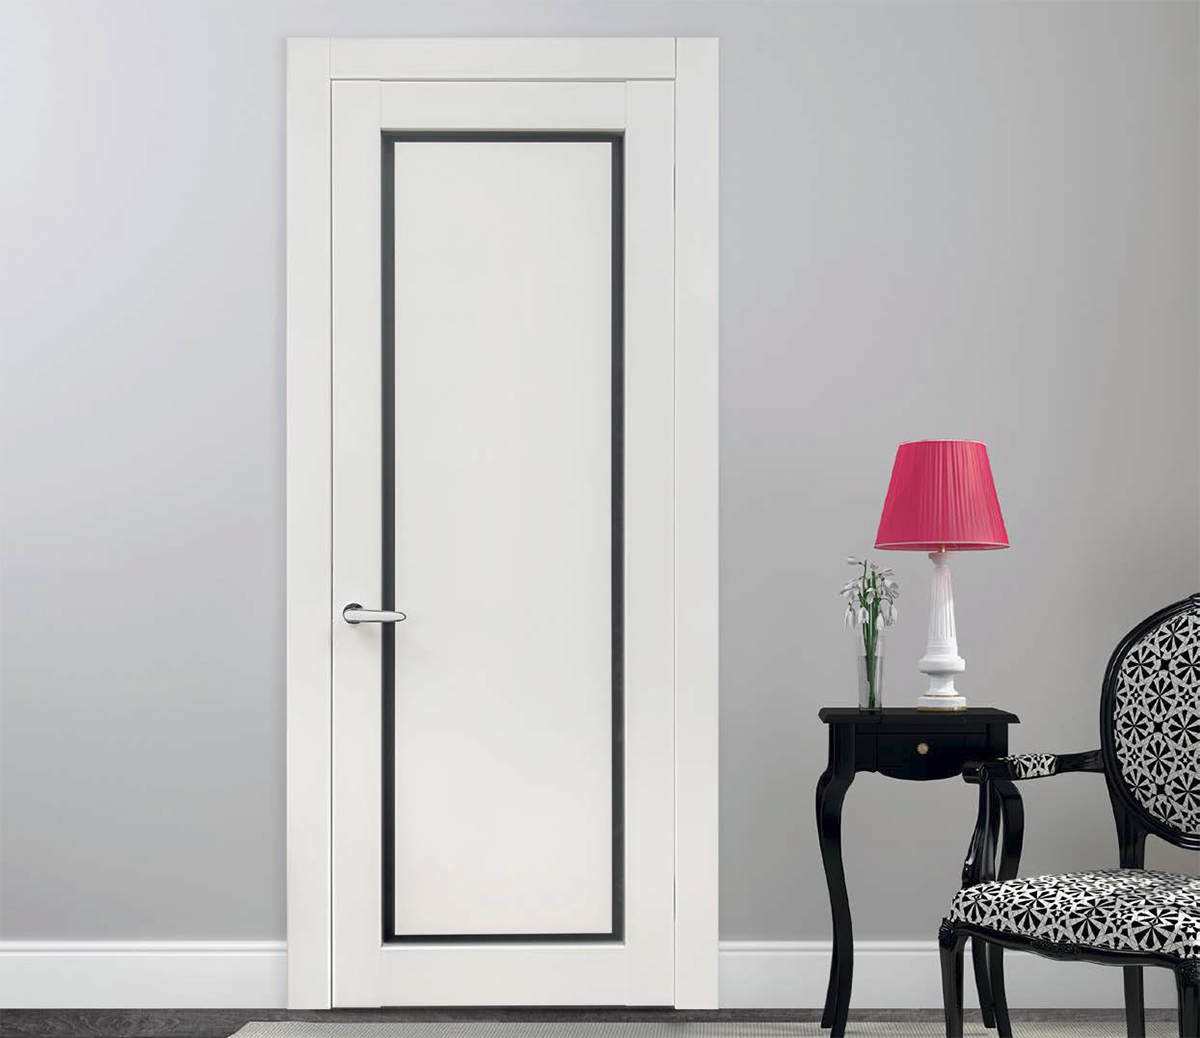 Висока якість та міцність дверей INTERIOR DOORS